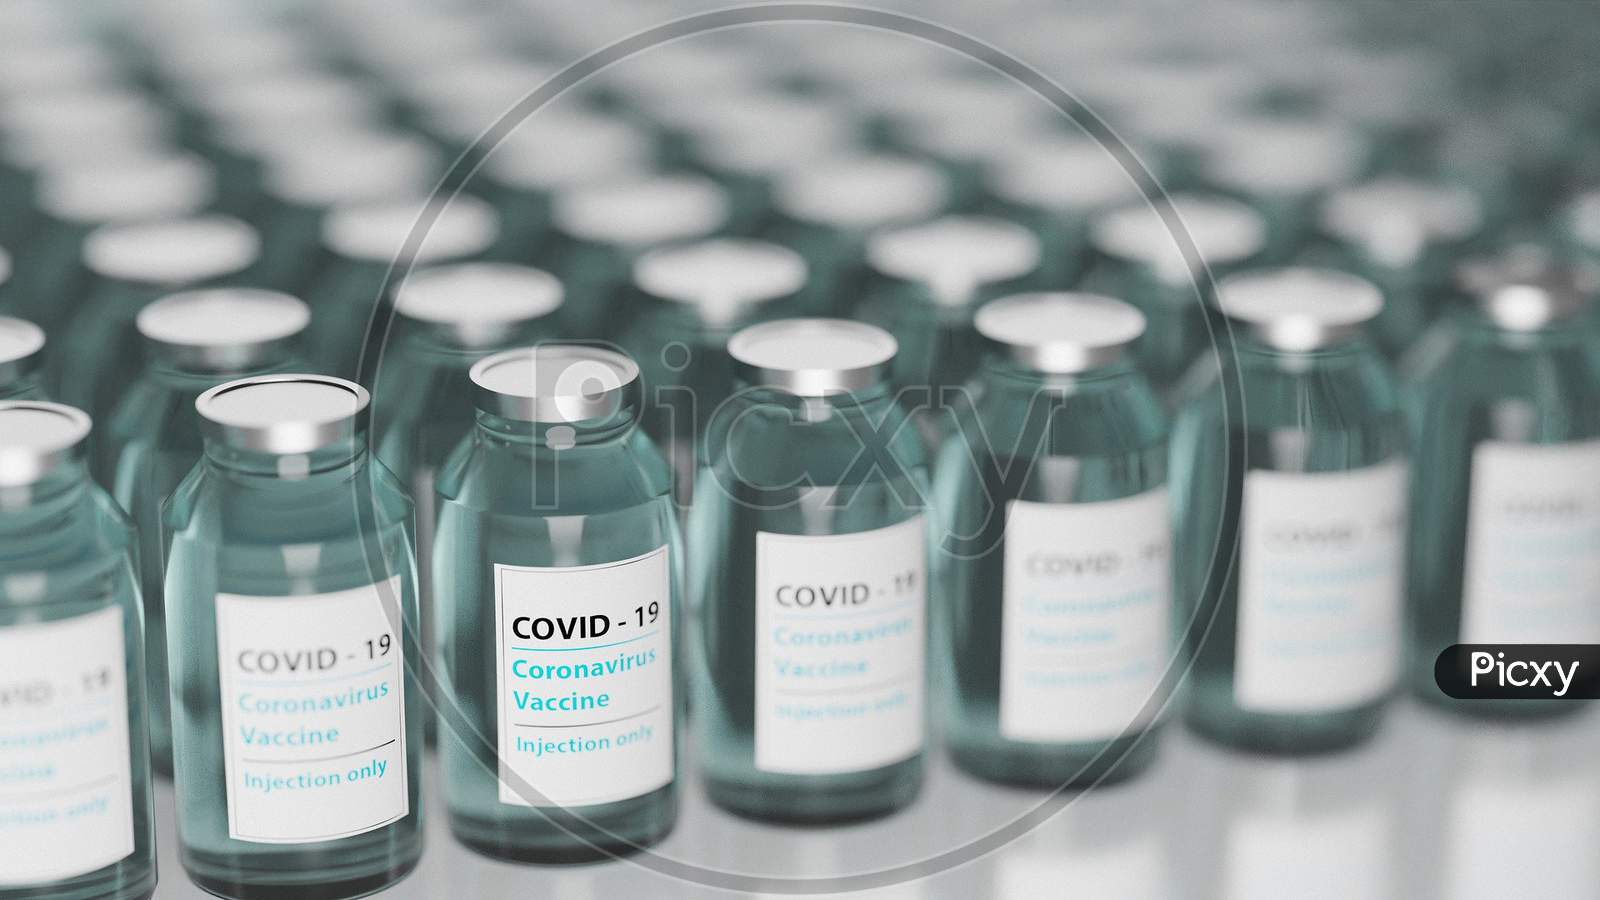 Covid - 19 Vaccines